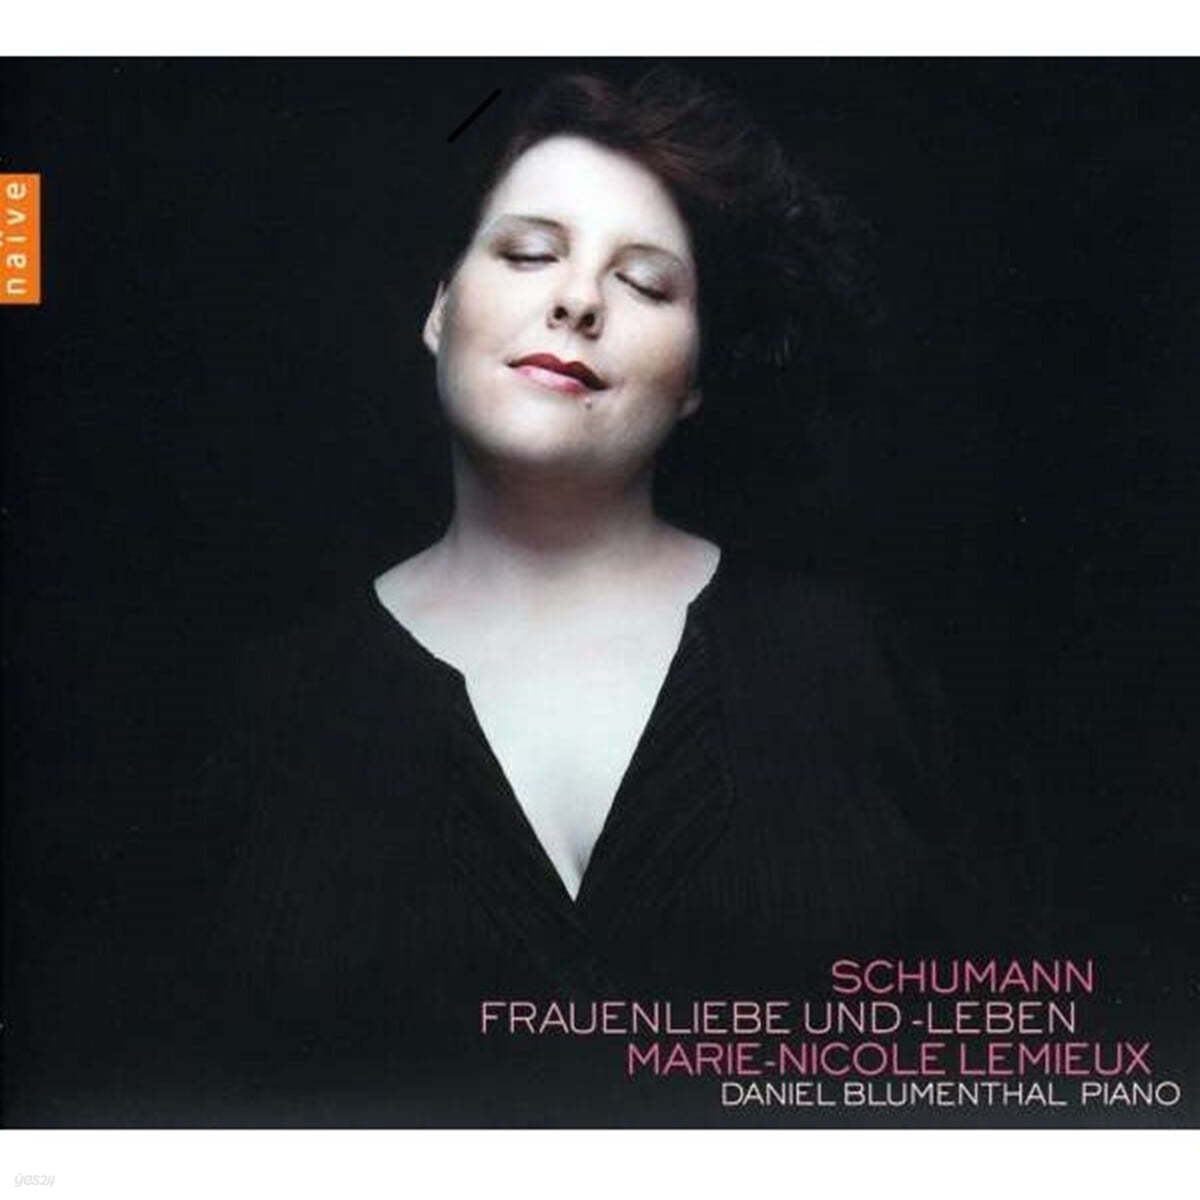 Marie-Nicole Lemieux 슈만: 여자의 사랑과 생애 (Schumann : Frauenliebe und Leben Op.42) 